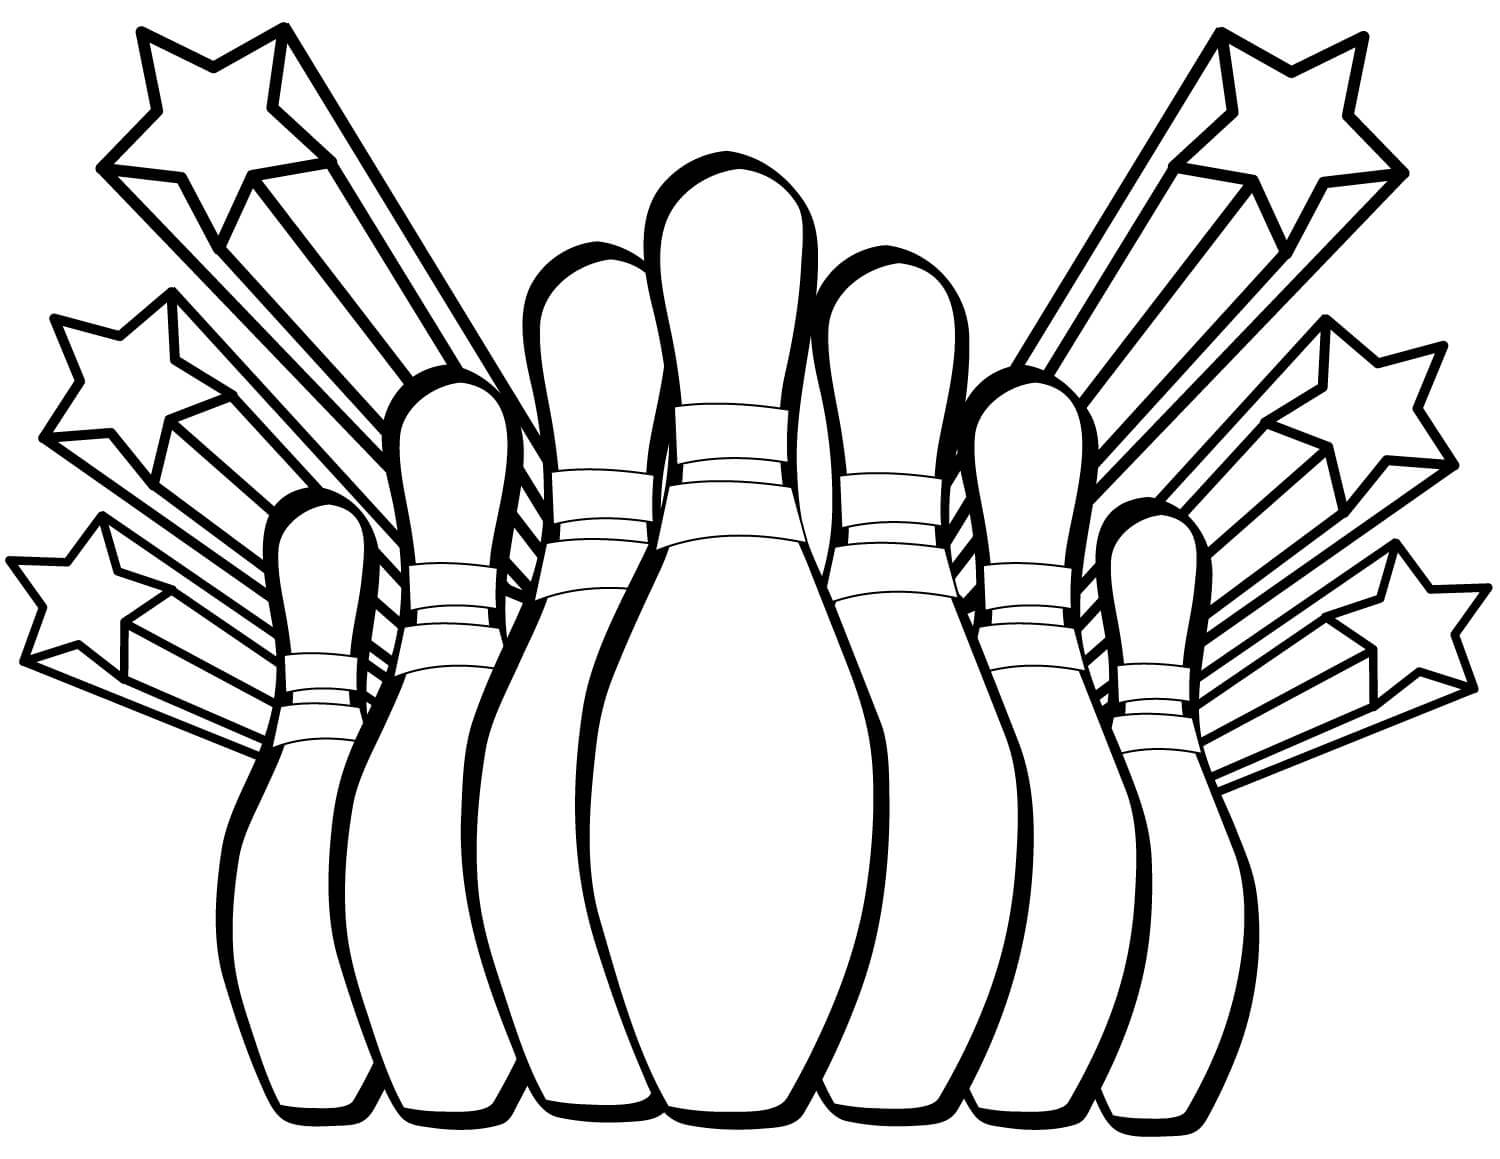 Bowling mit Sieben Kegeln